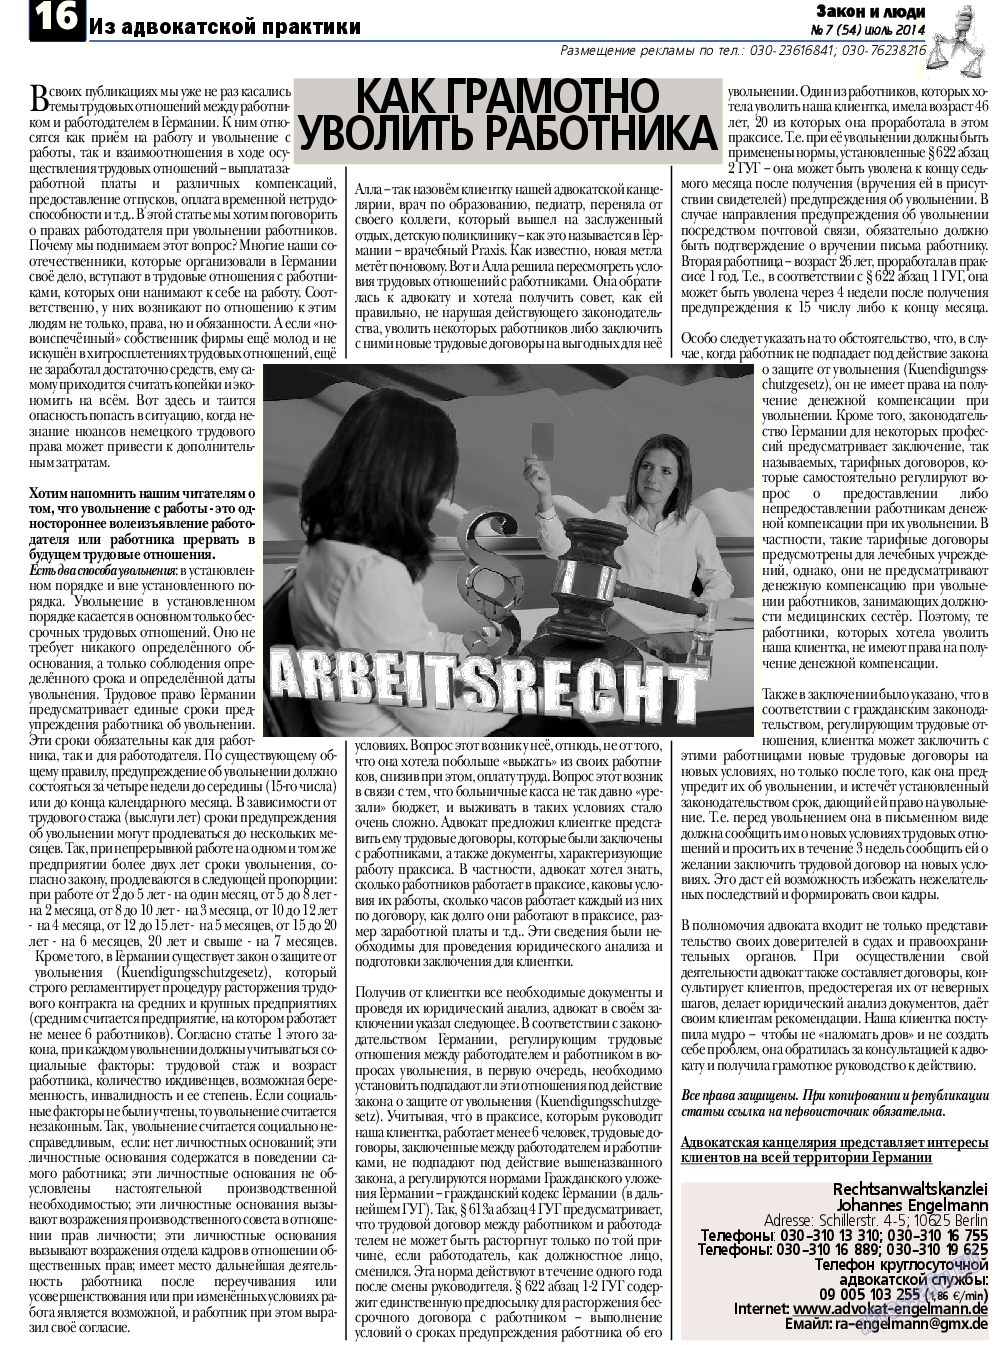 Закон и люди, газета. 2014 №7 стр.16